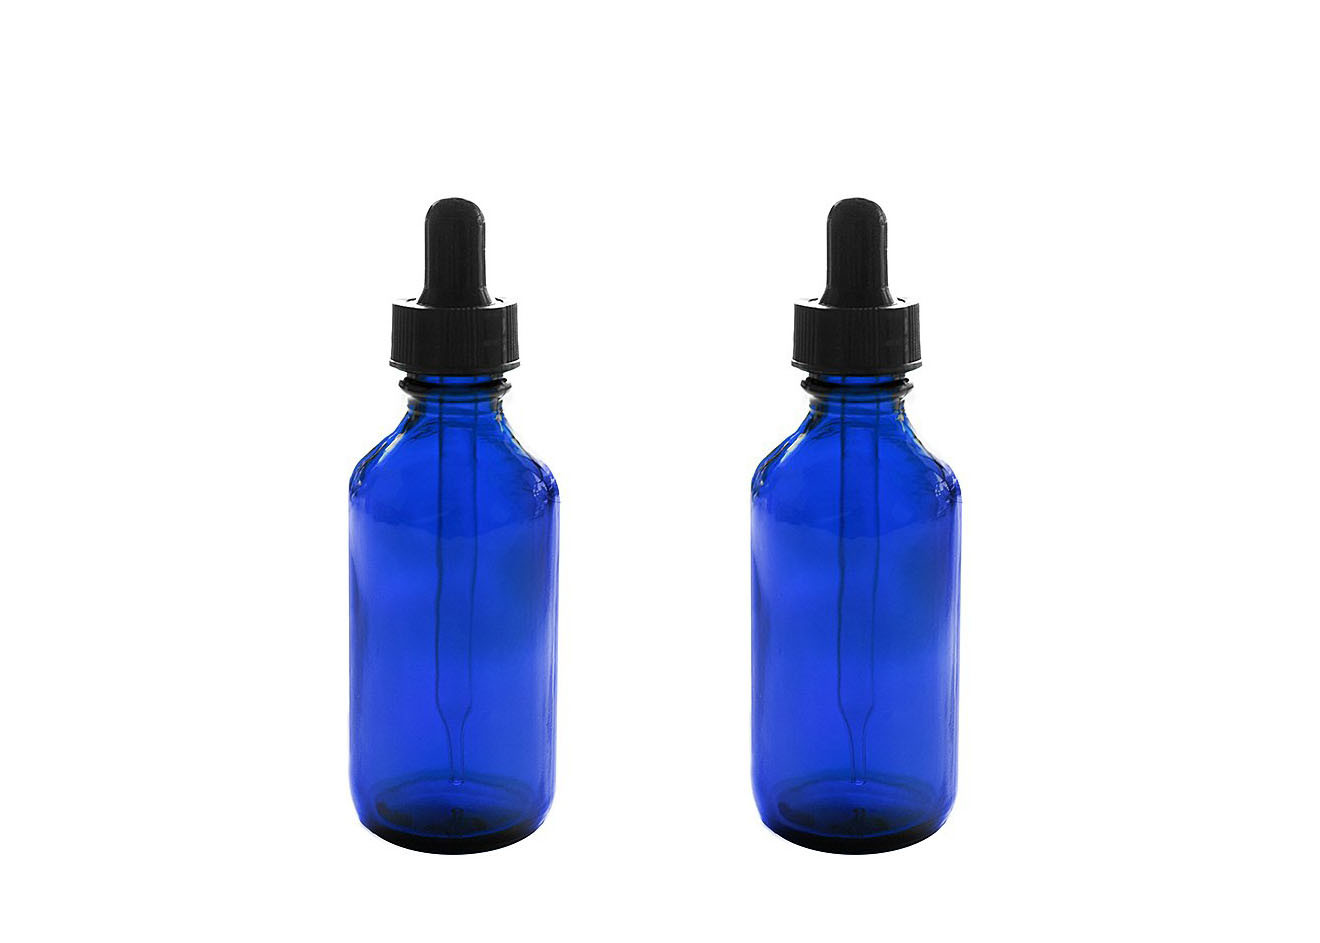 Blaue leere Flaschen des ätherischen Öls, die Parfüm-Chemie-Chemikalien speichern